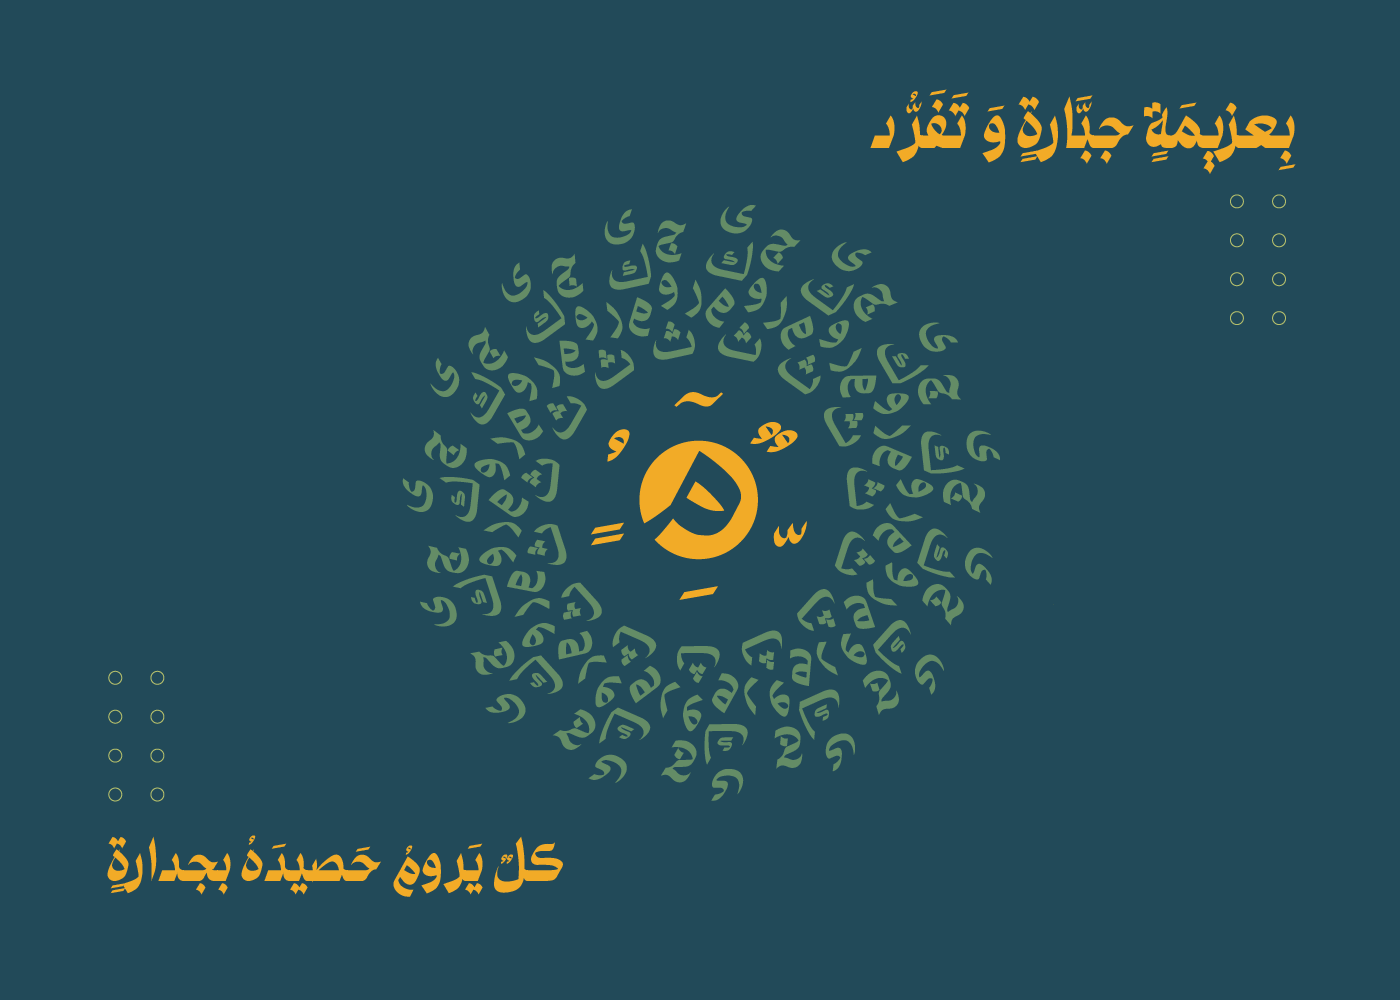 arabic typography font text Typeface typography   تايبوجرافي خط خط عربي